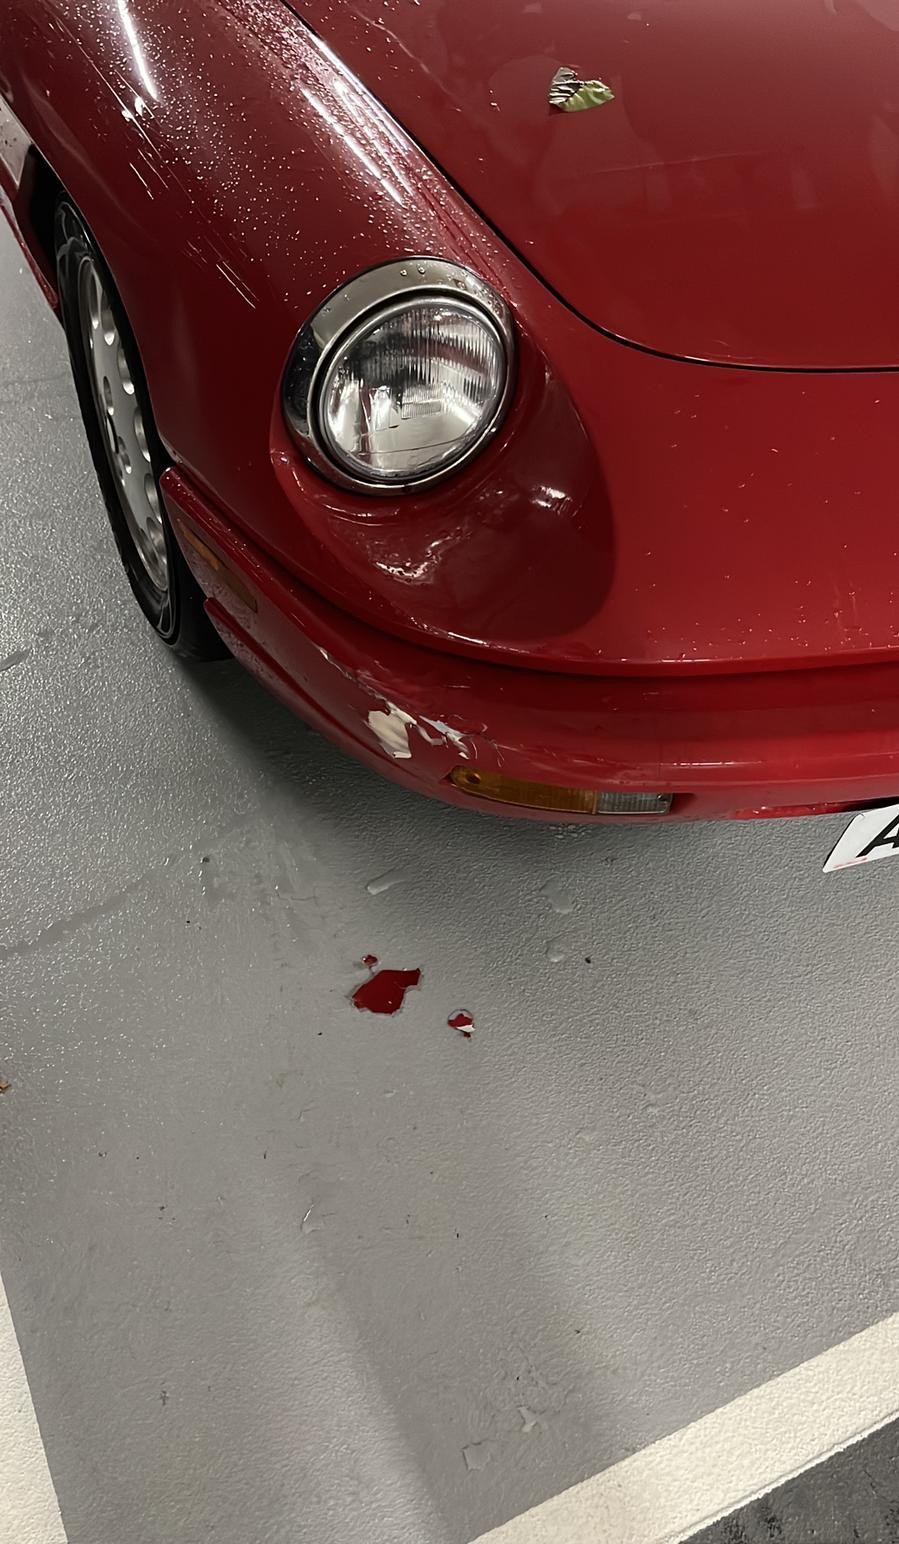 林作駕駛的紅色跑車車頭損毀。